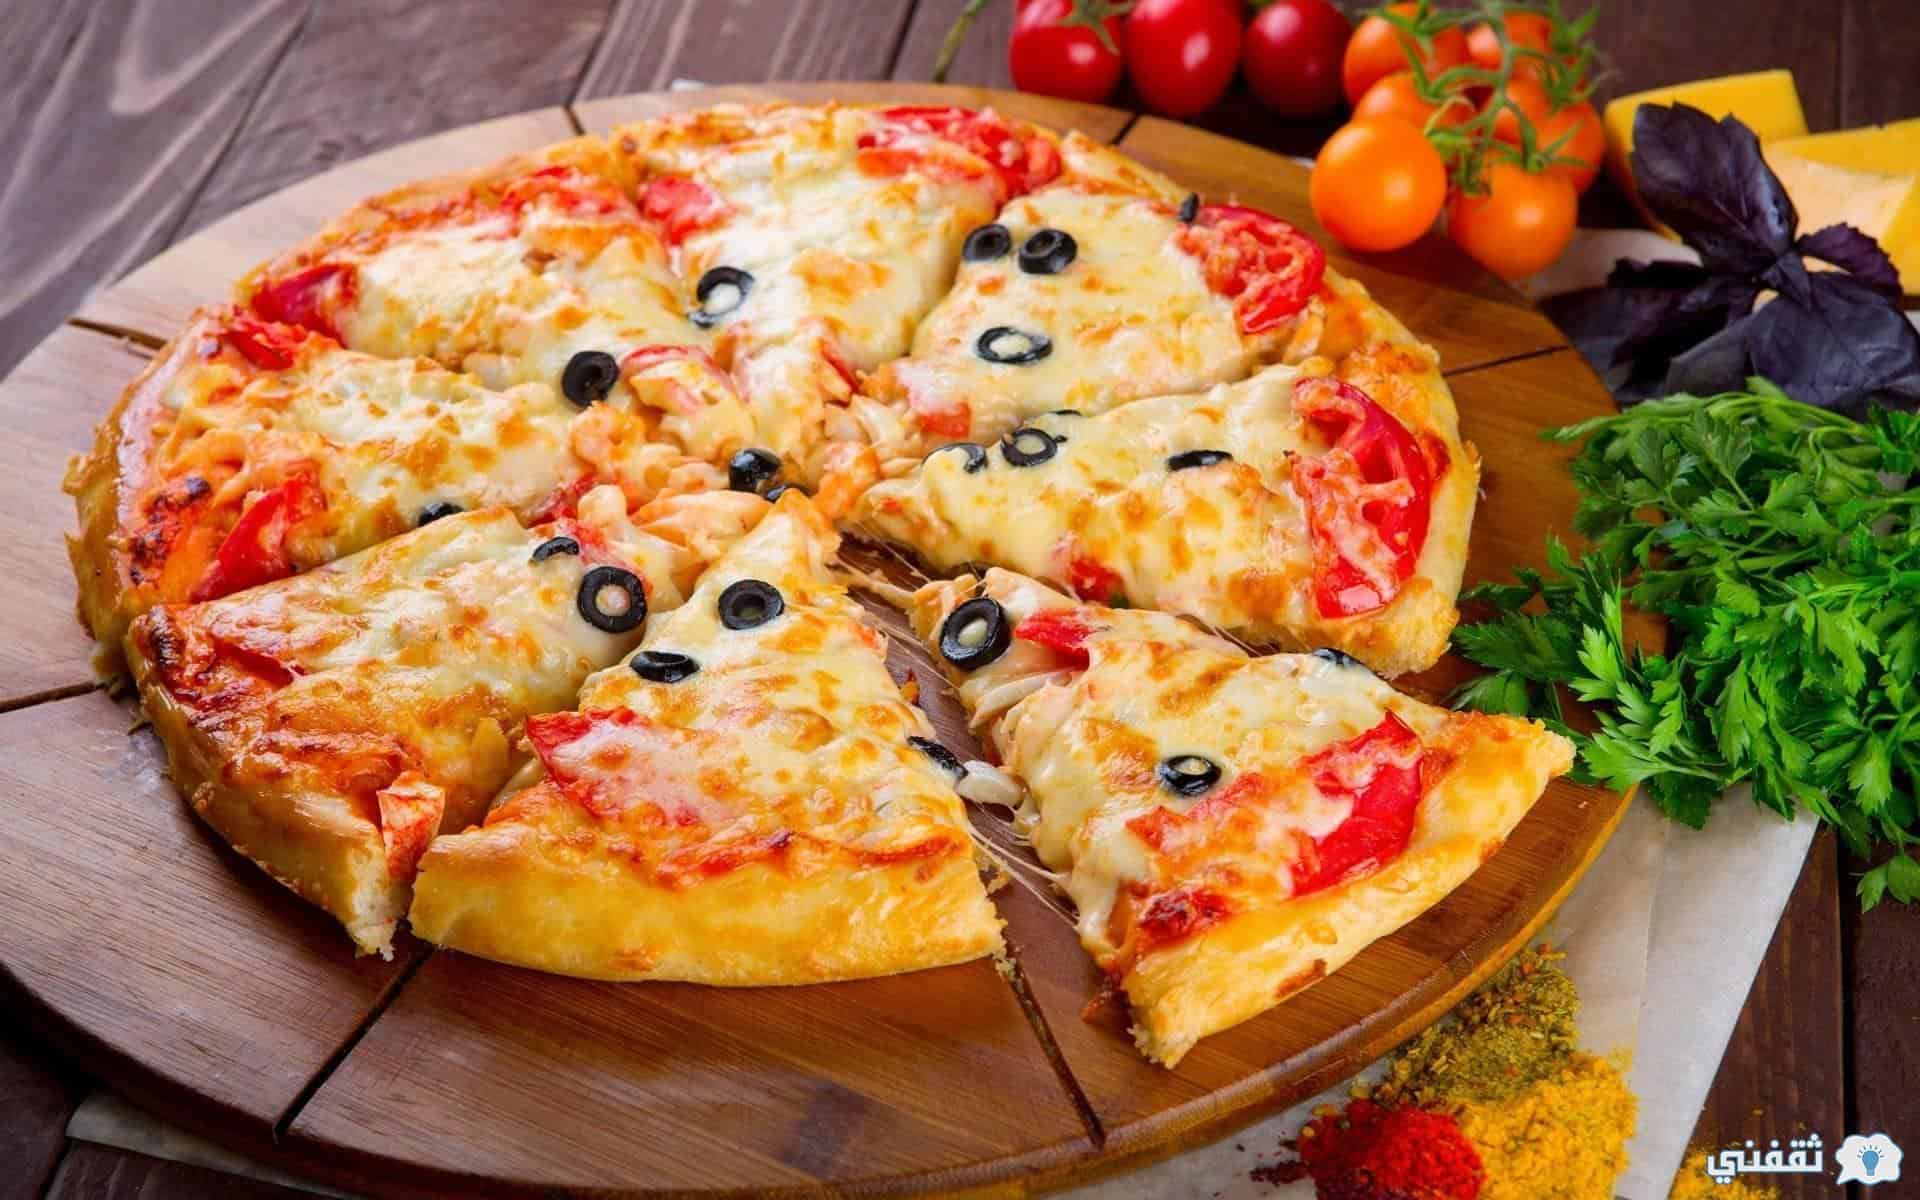 طريقة عمل البيتزا الميكس الخطيرة2021 بخطوات سهلة جداً للغاية مثل المطاعم الكبيرة